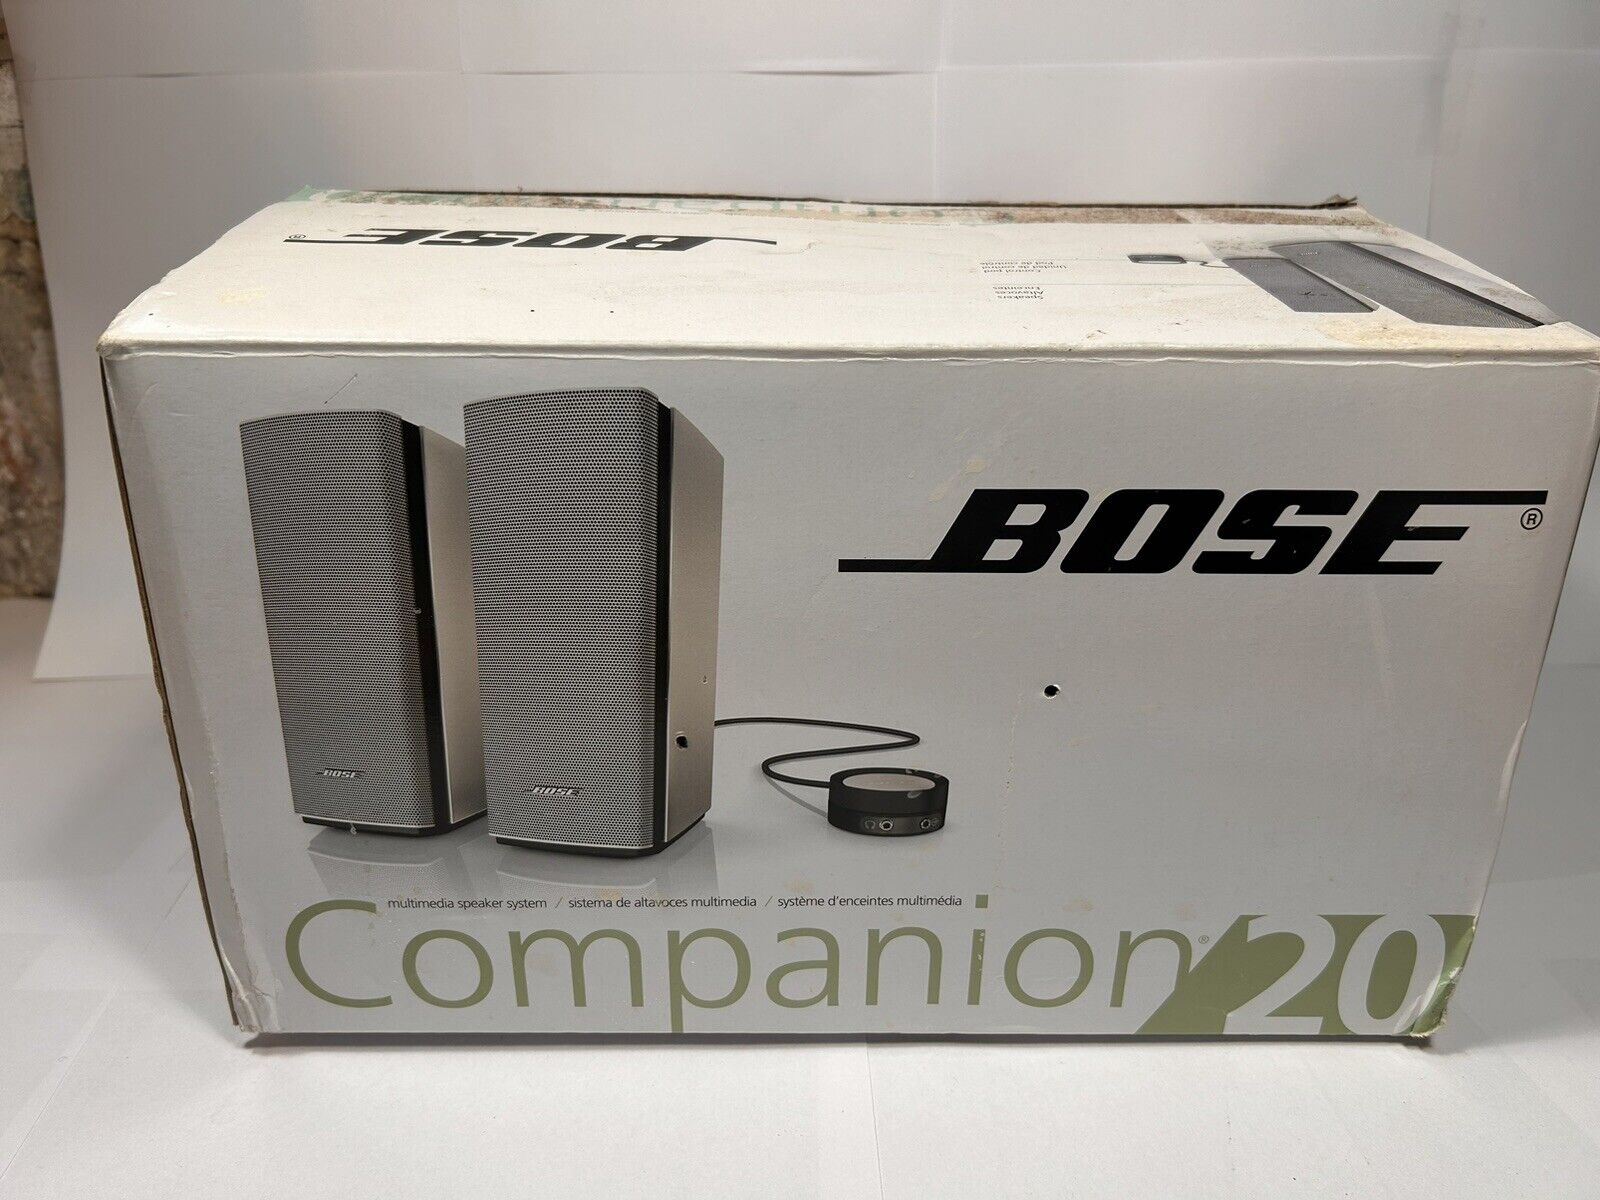 BOSE COMPANION 20 MULTIMEDIA SPEAKER SYSTEM Silver~OPEN BOX